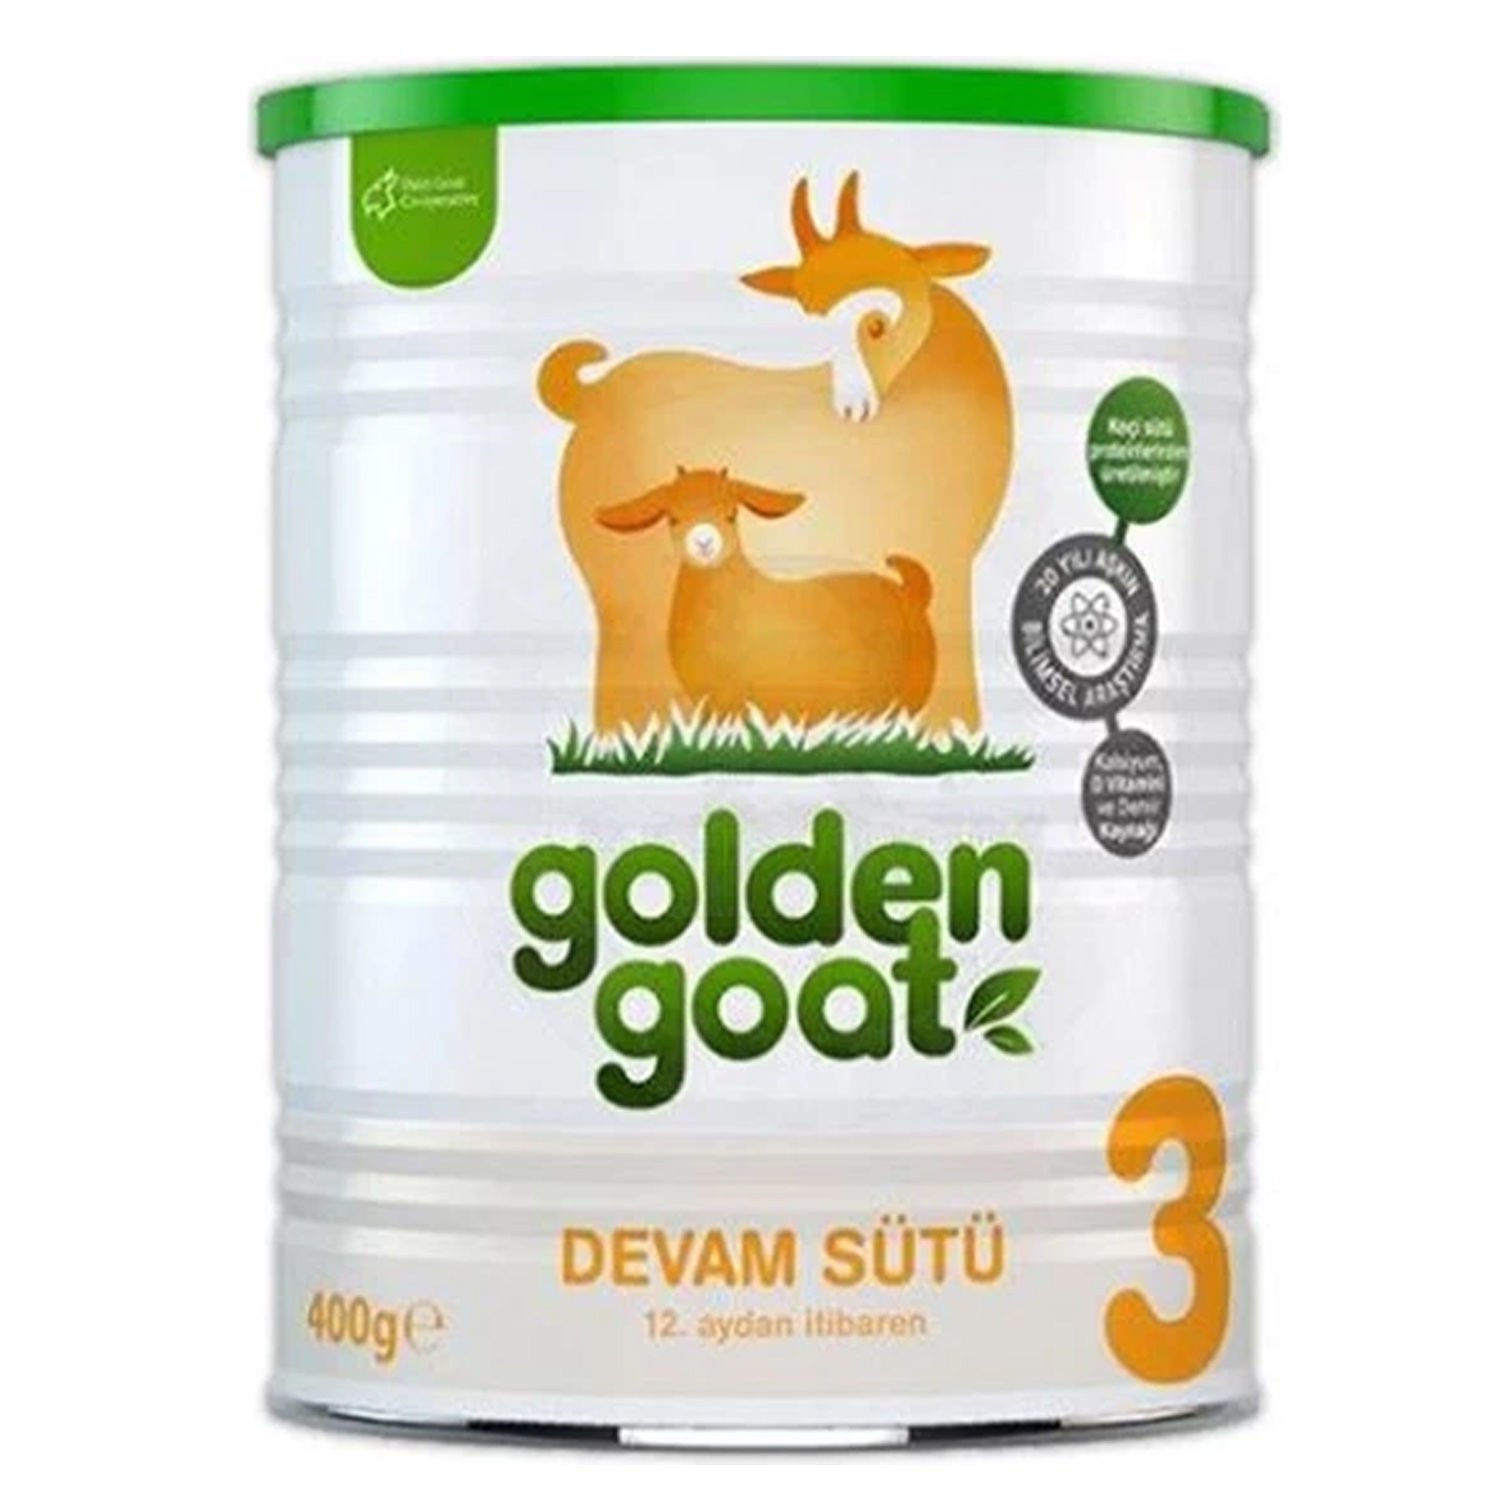 Golden Goat 3 Keçi Devam Sütü 400 gr